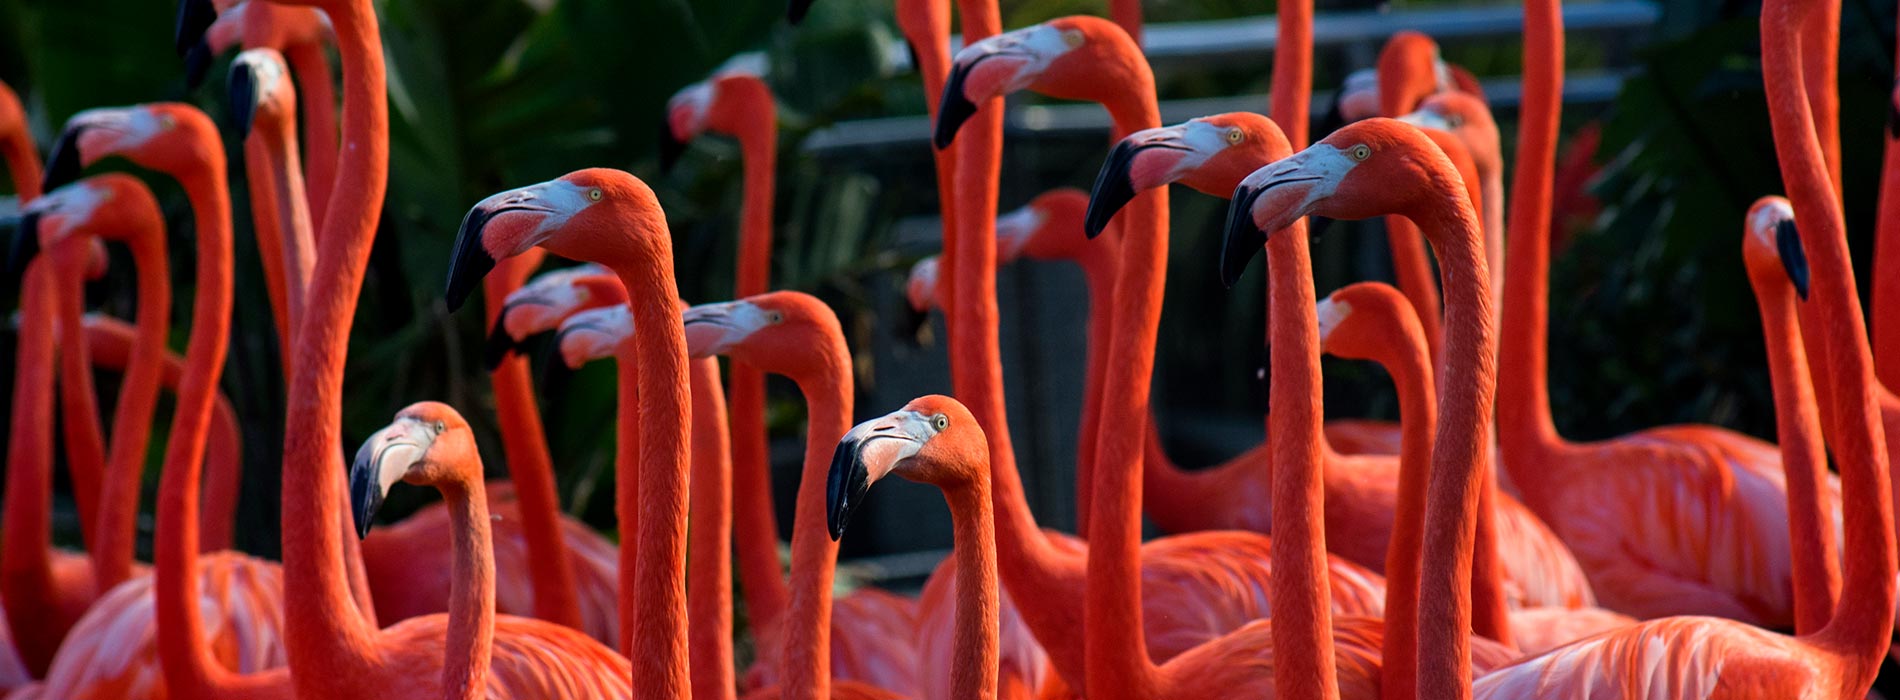 Image of Flamingo Up-Close Encounter